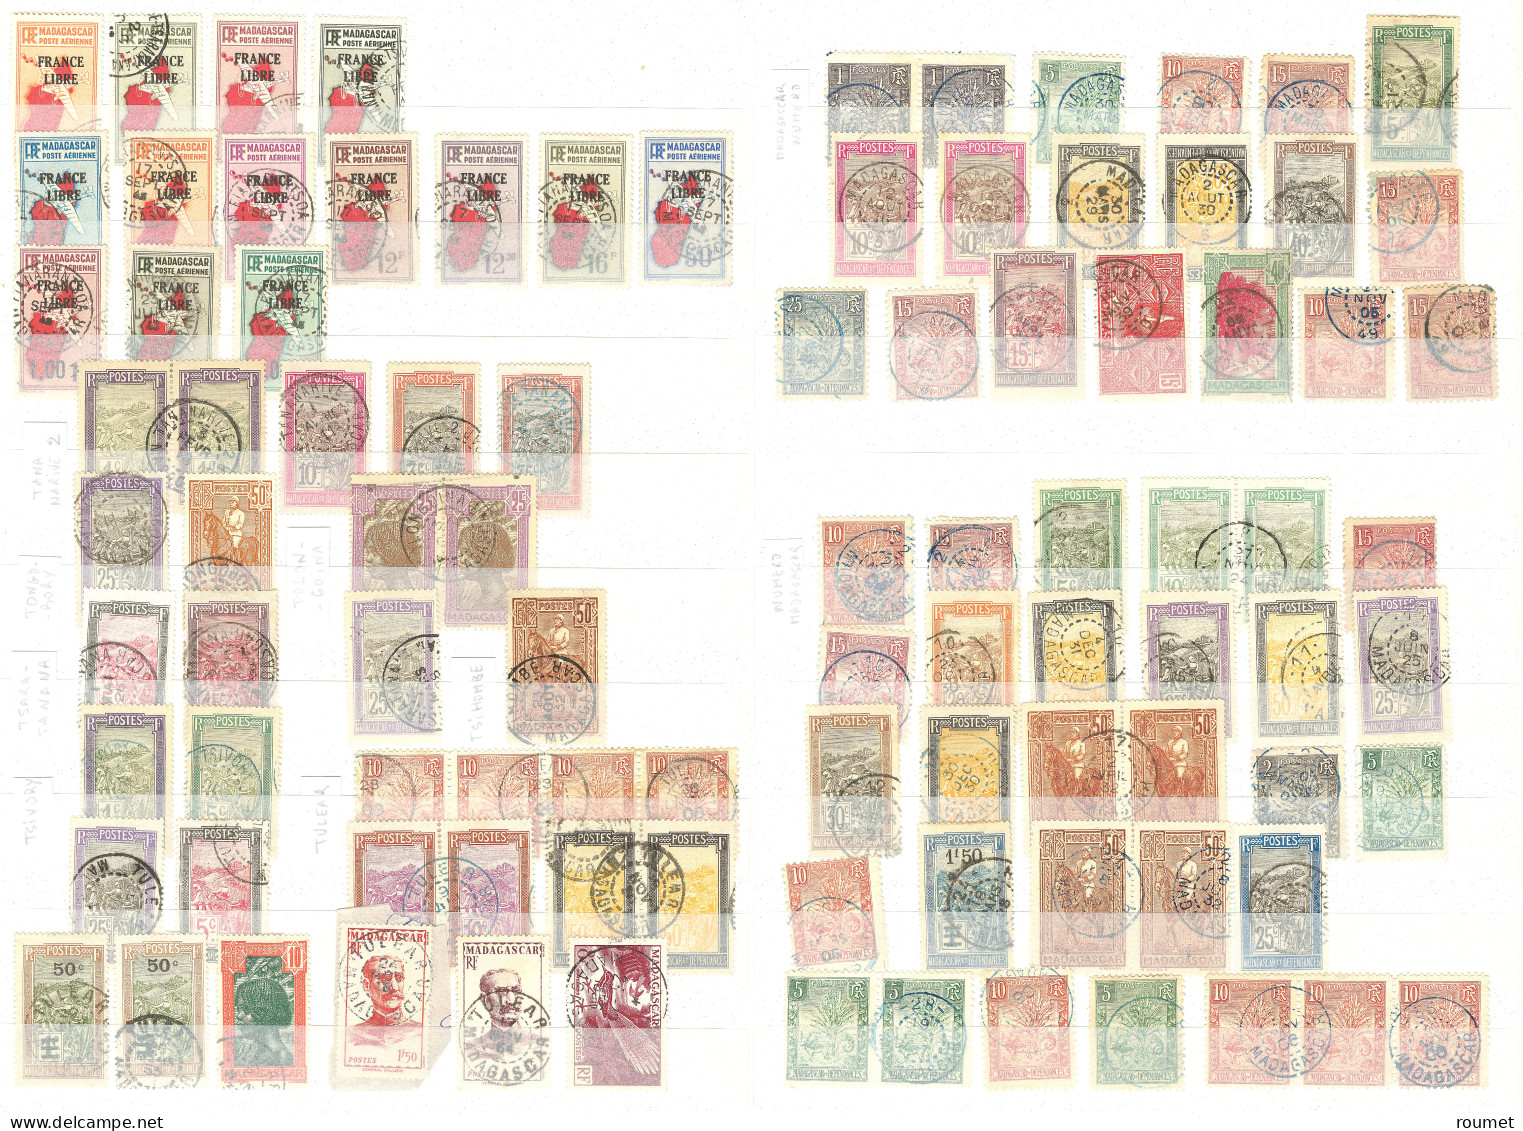 Collection. 1903-1957 (Poste, PA, Taxe), divers dont multiples et séries complètes, obl choisies de petits bureaux dont 